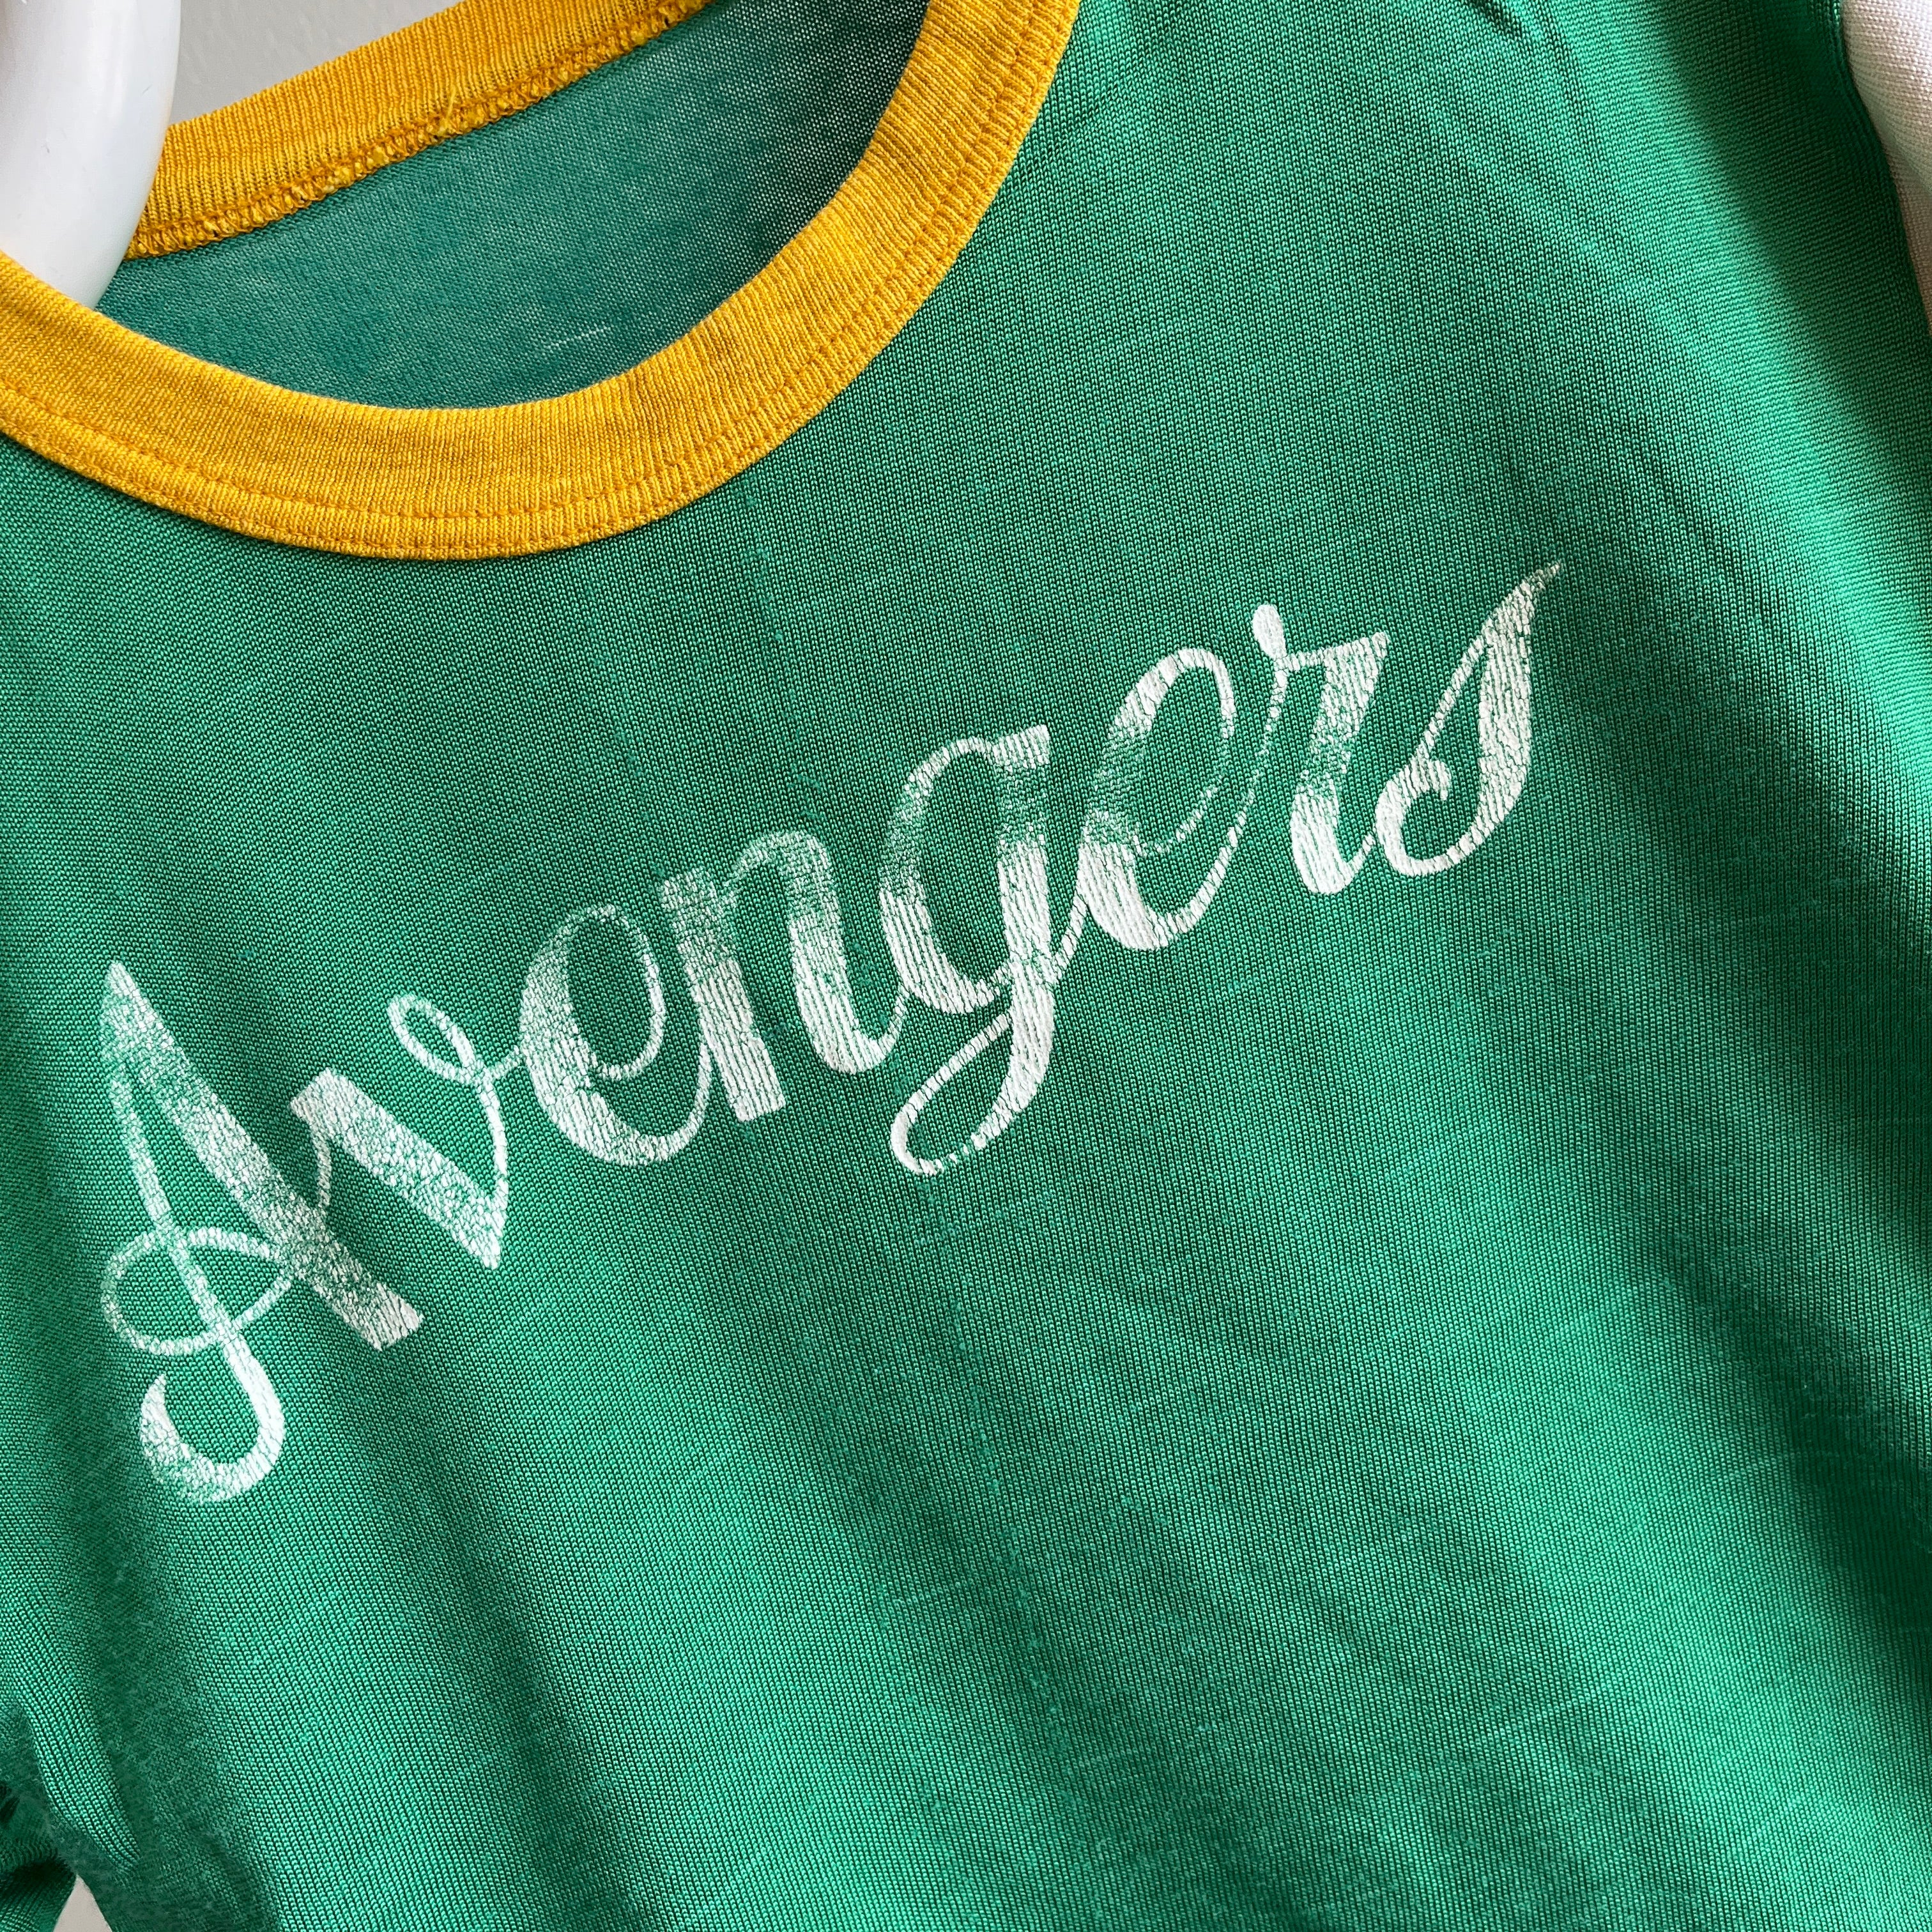 T-shirt de sport en nylon Avengers n ° 9 des années 1970 - WOW